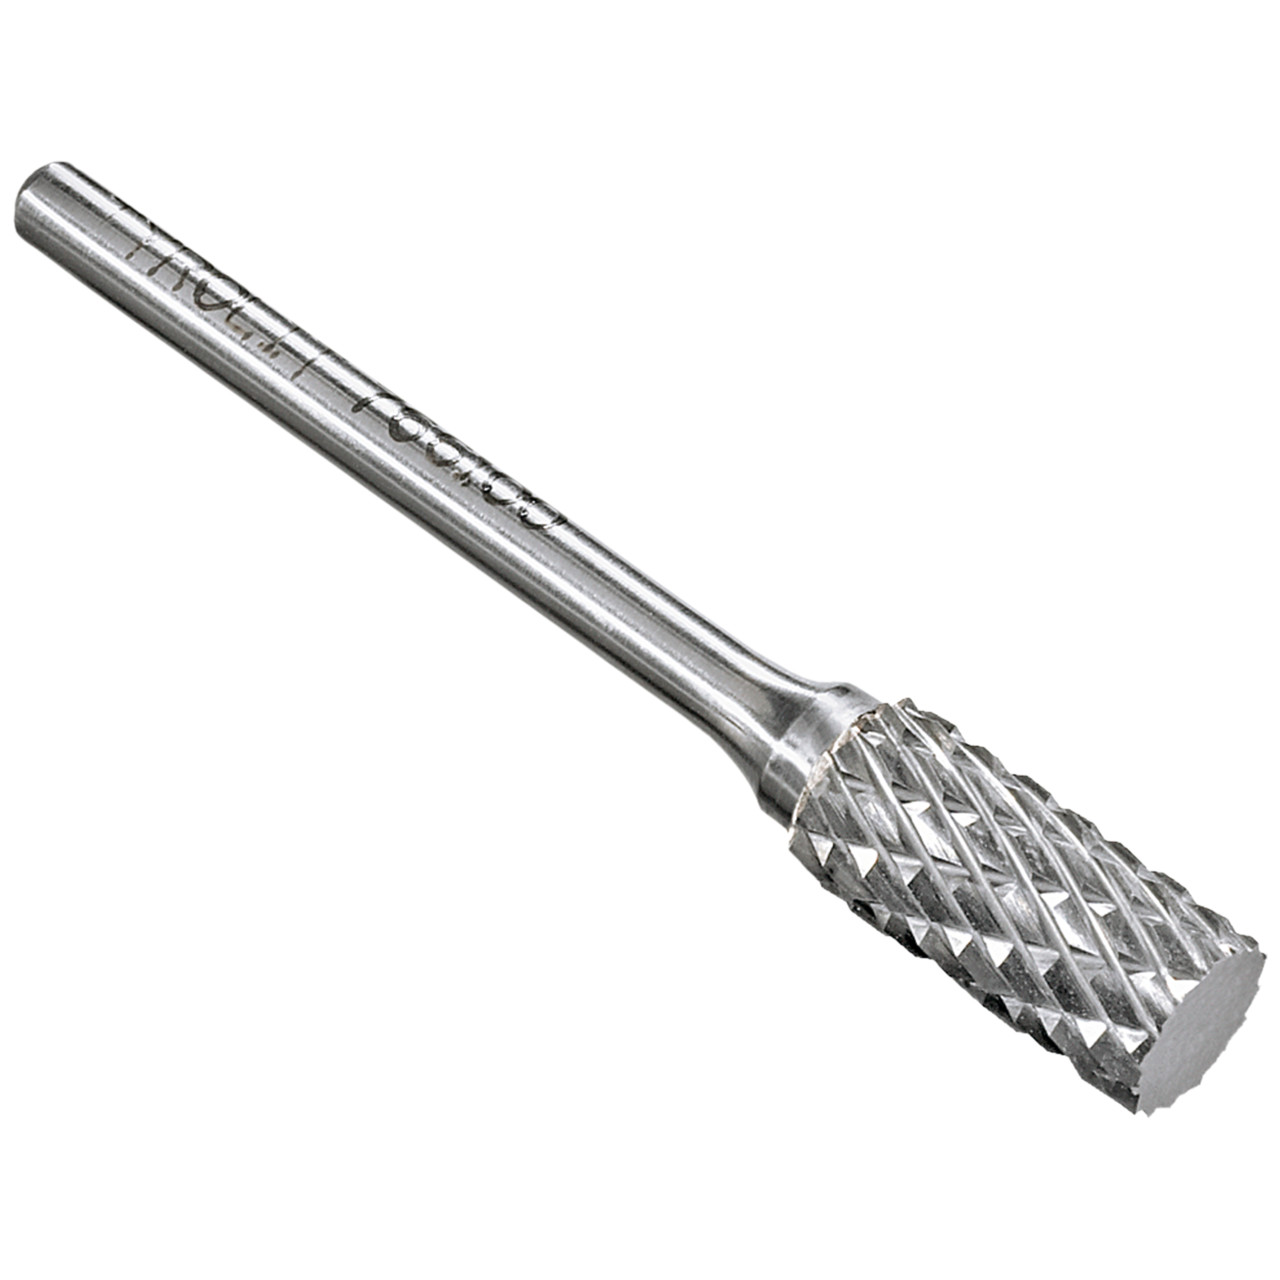 Tyrolit Fresa de metal duro DxT-SxL 8x19-6x65 Para fundición, acero y acero inoxidable, forma: 52ZYA - cilindro, Art. 768750